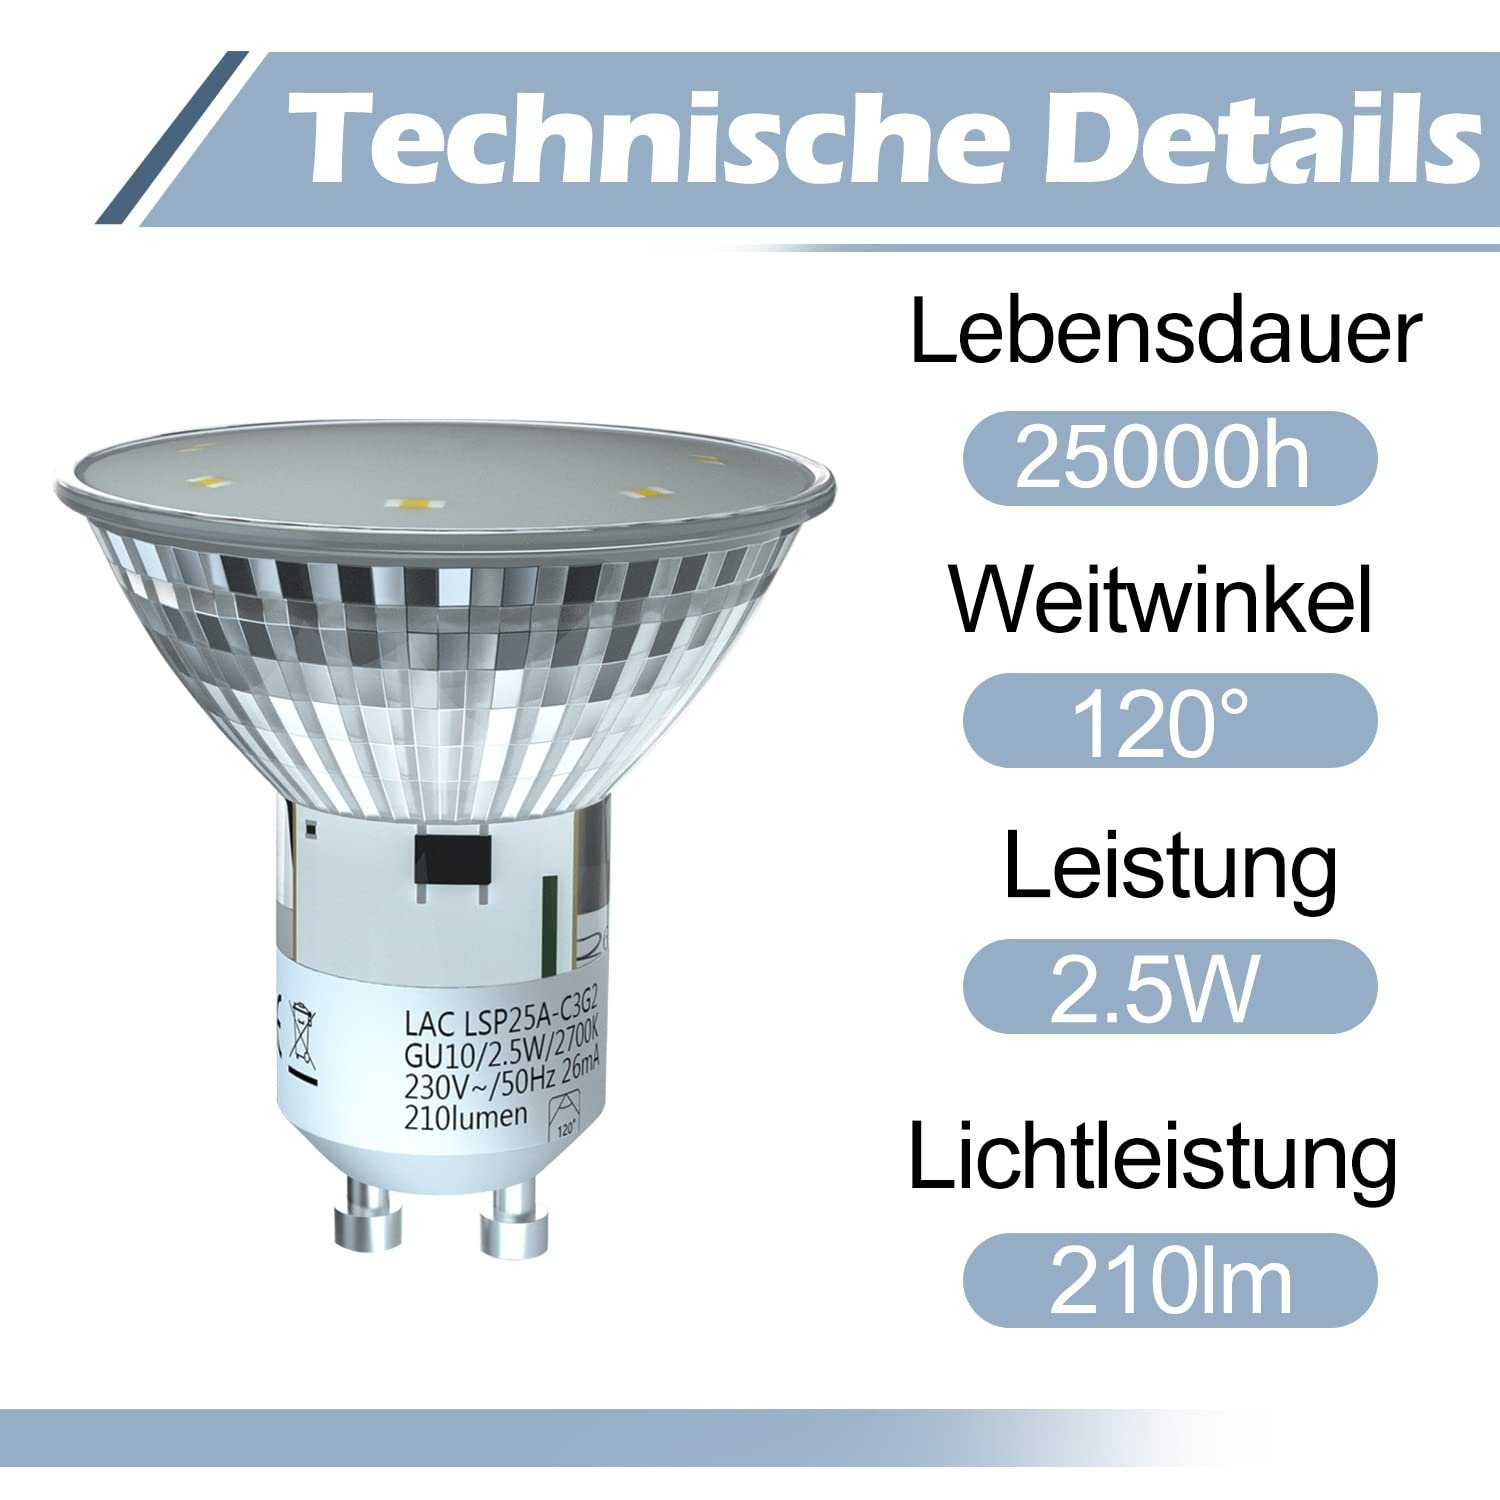 ZMH LED-Leuchtmittel GU10 Warmweiß 2700K Abstrahlwinkel Strahler, Einbaustrahler Warmweiß ° 5 120 St., GU10, Glühbirne